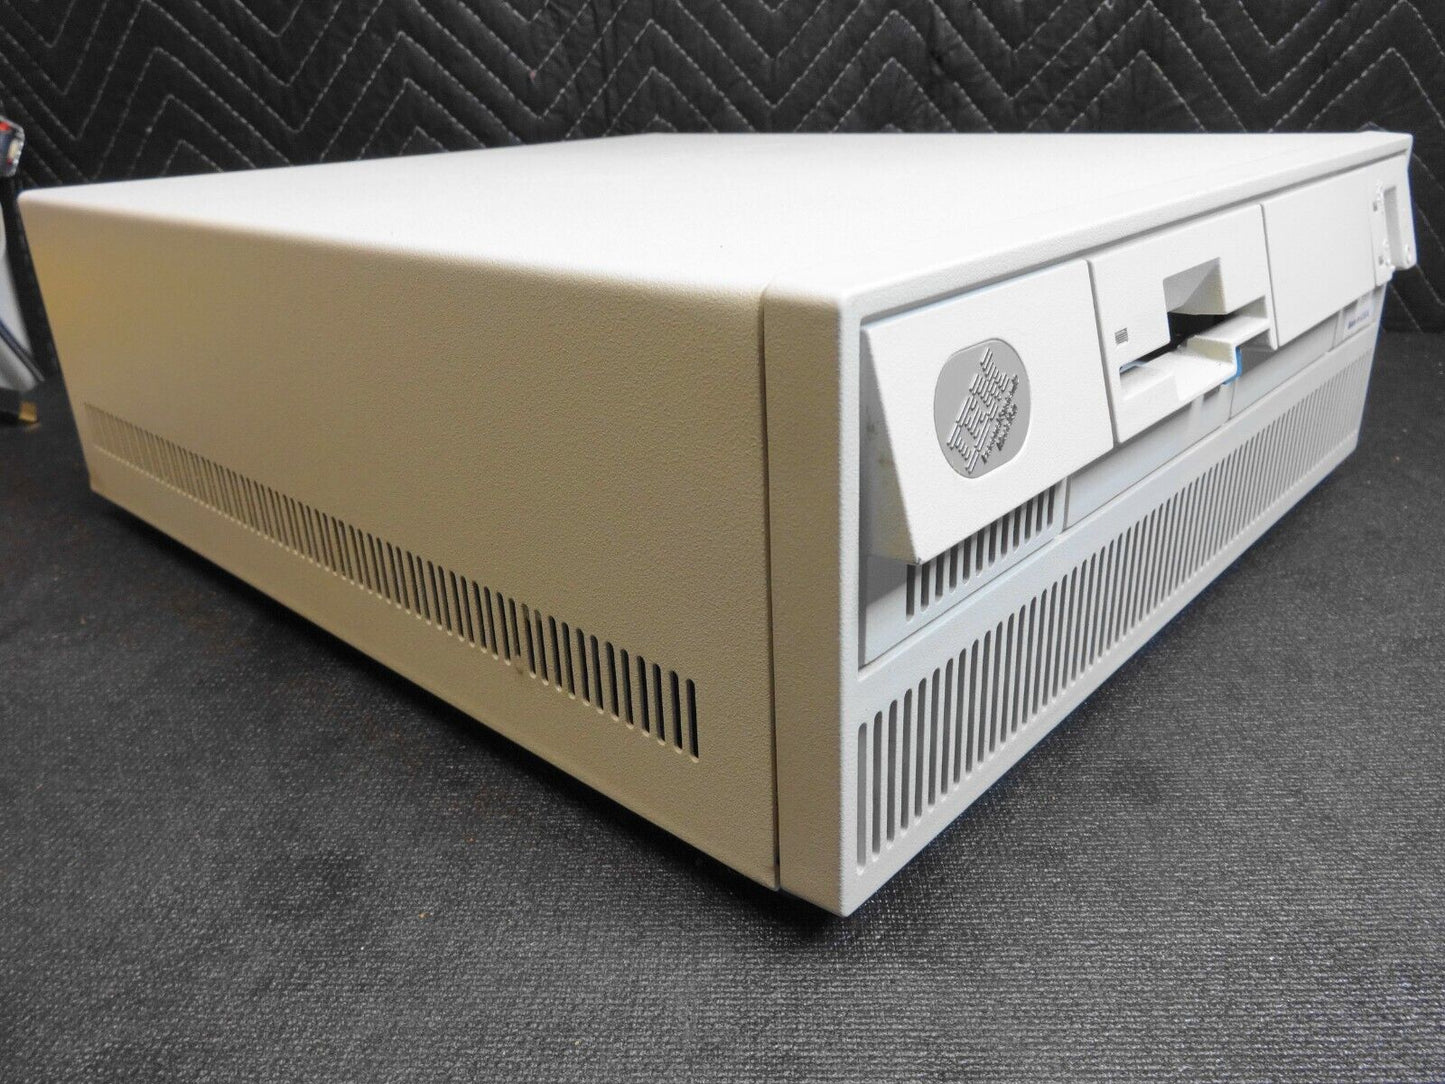 IBM PS/2 Model 50 - Vintage Retro Computer